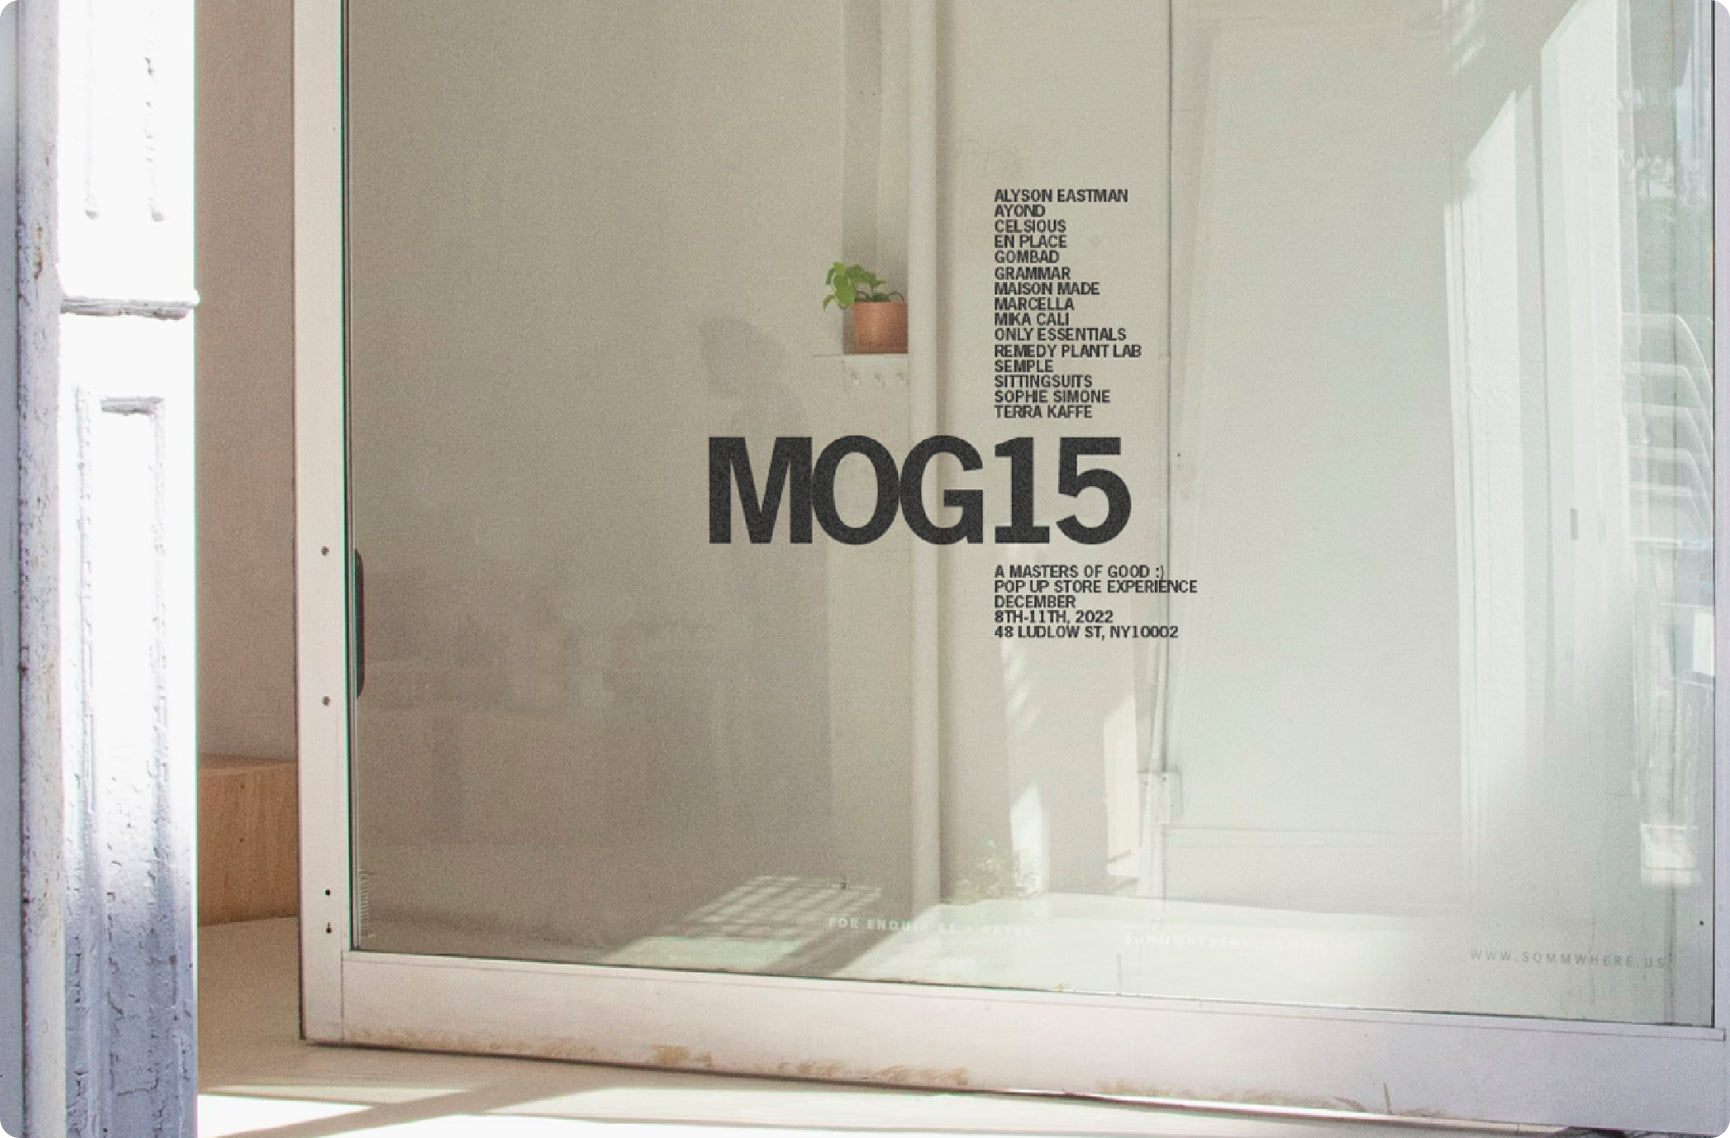 Terra Kaffe | Open glass door with "MOG15" printed on the window